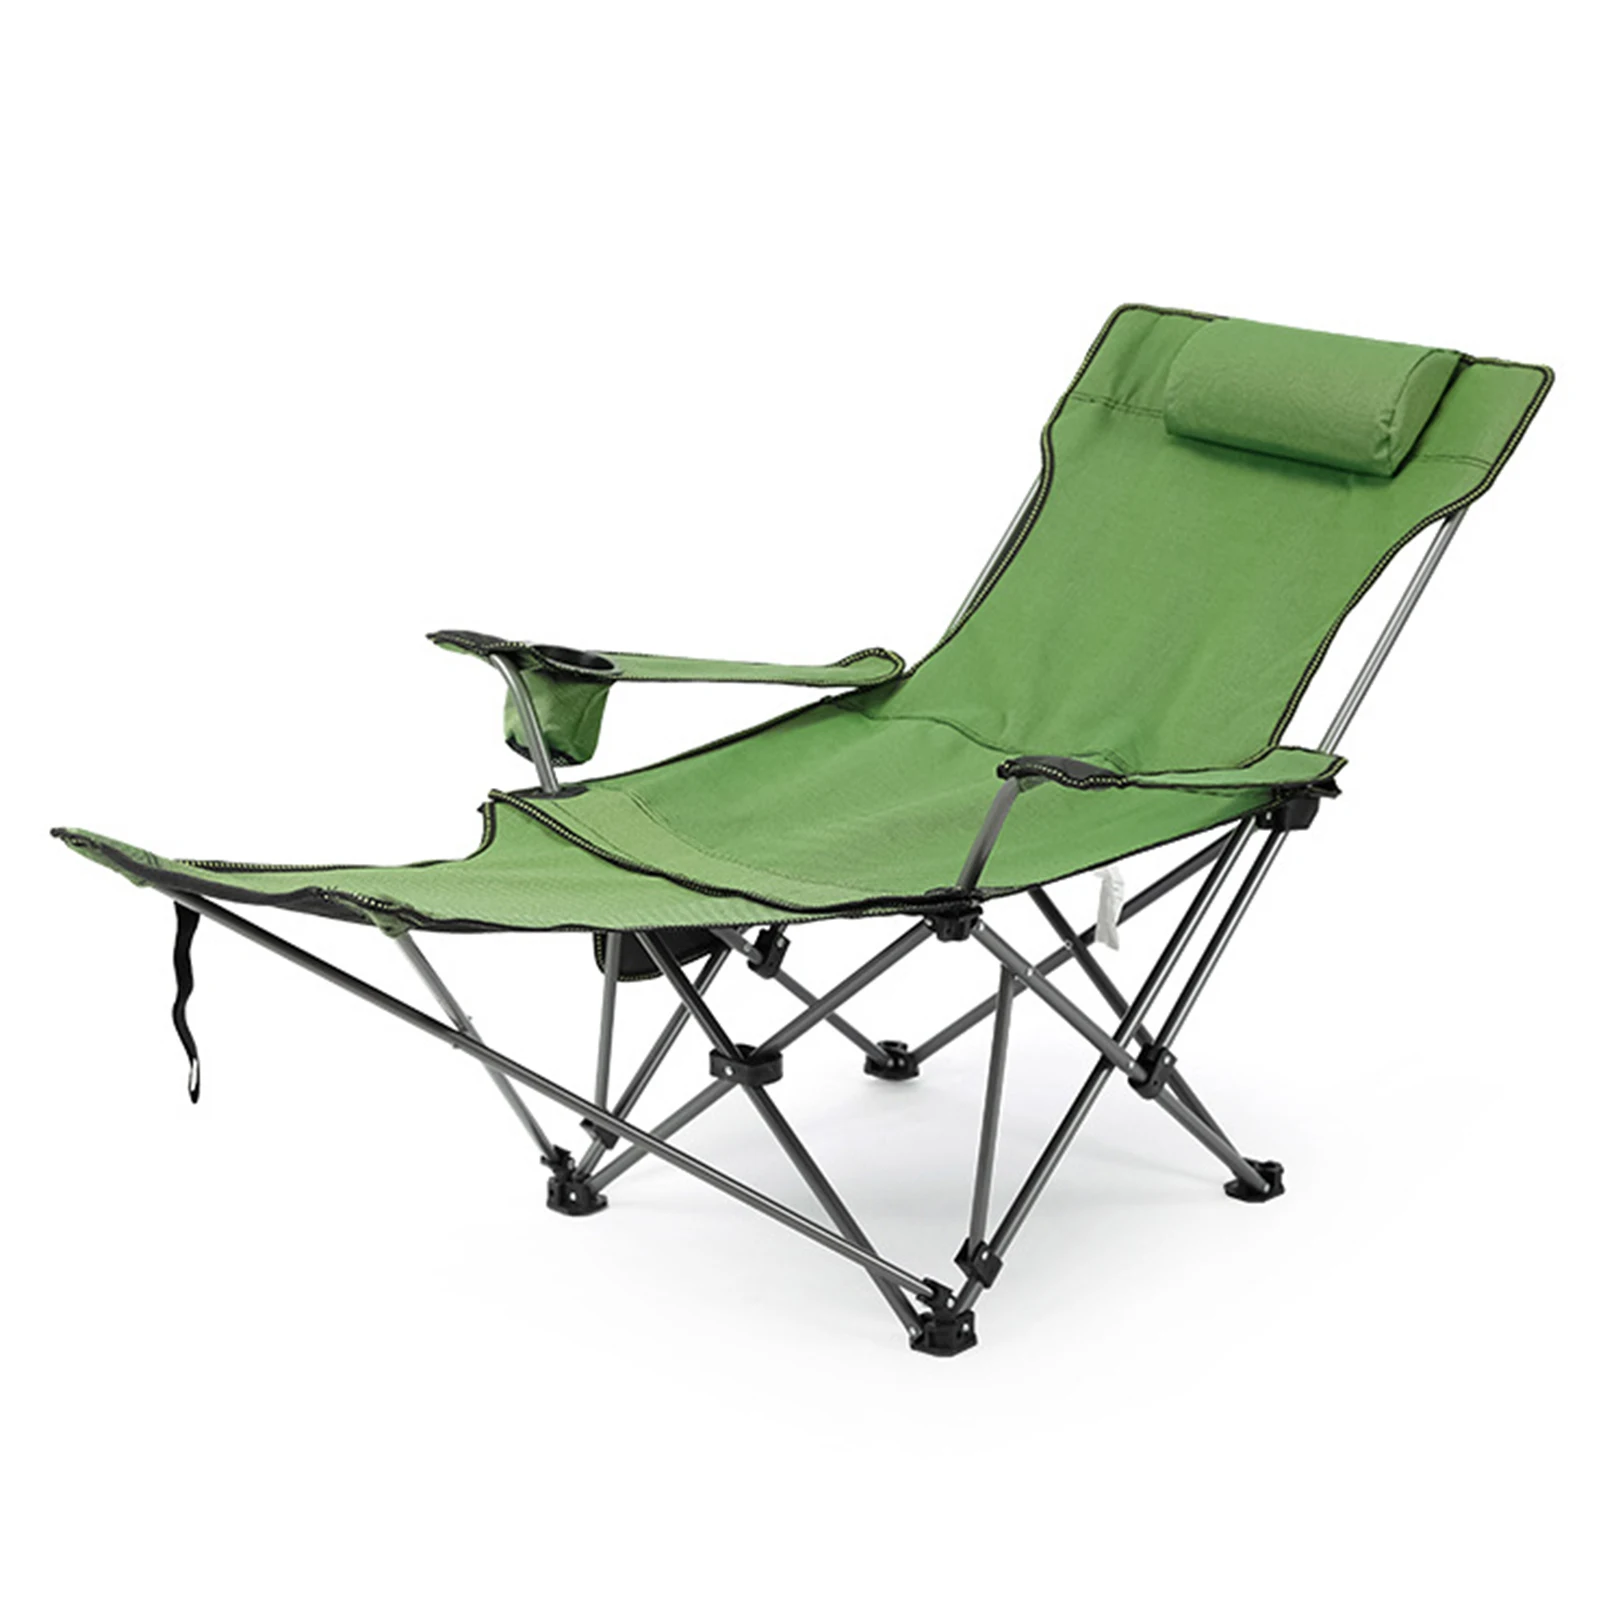 저렴한 2 In 1 접이식 캠핑 의자 낚시 용 탈착식 발판이있는 휴대용 조절 식 리클 라이닝 라운지 의자